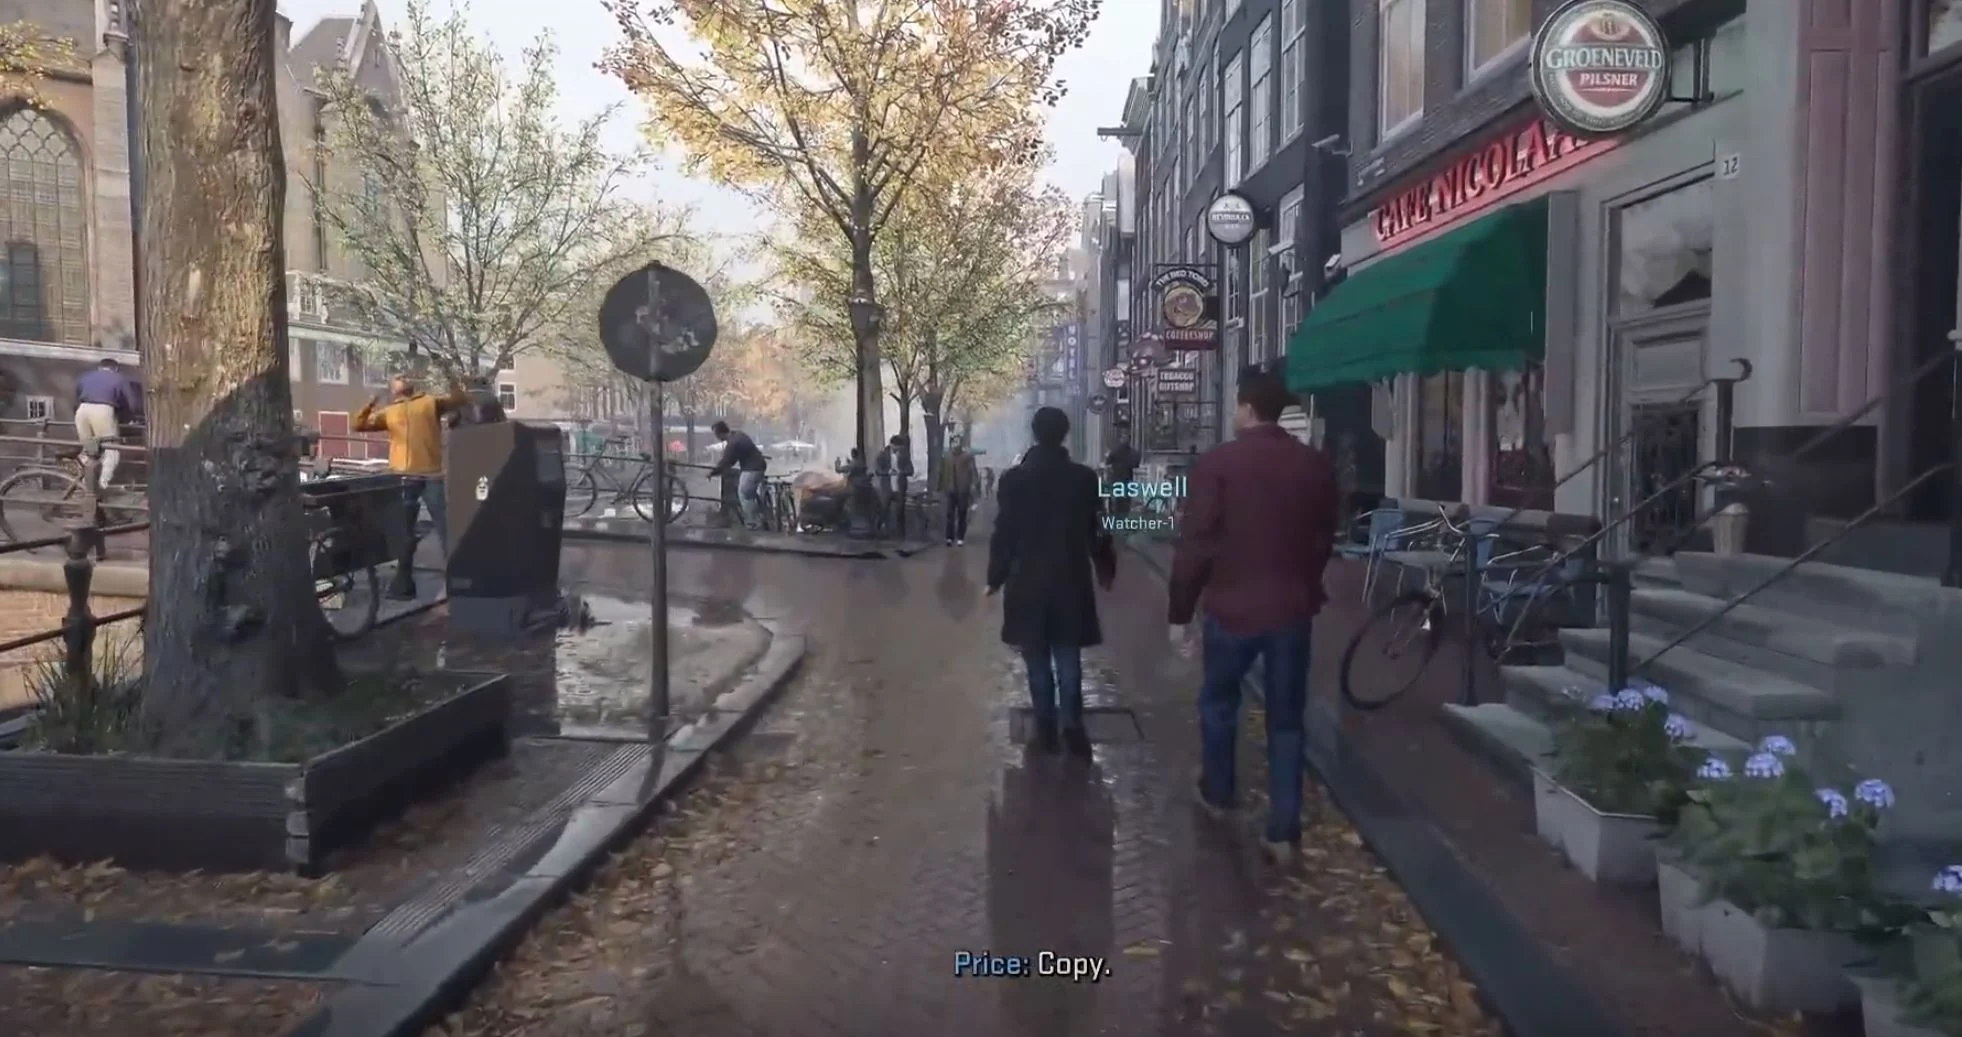 Gdzie jest gra, a gdzie rzeczywistość? W Call of Duty Modern Warfare II w jednej z misji gracze zostali zszokowani przez dokładną replikę Amsterdamu-2